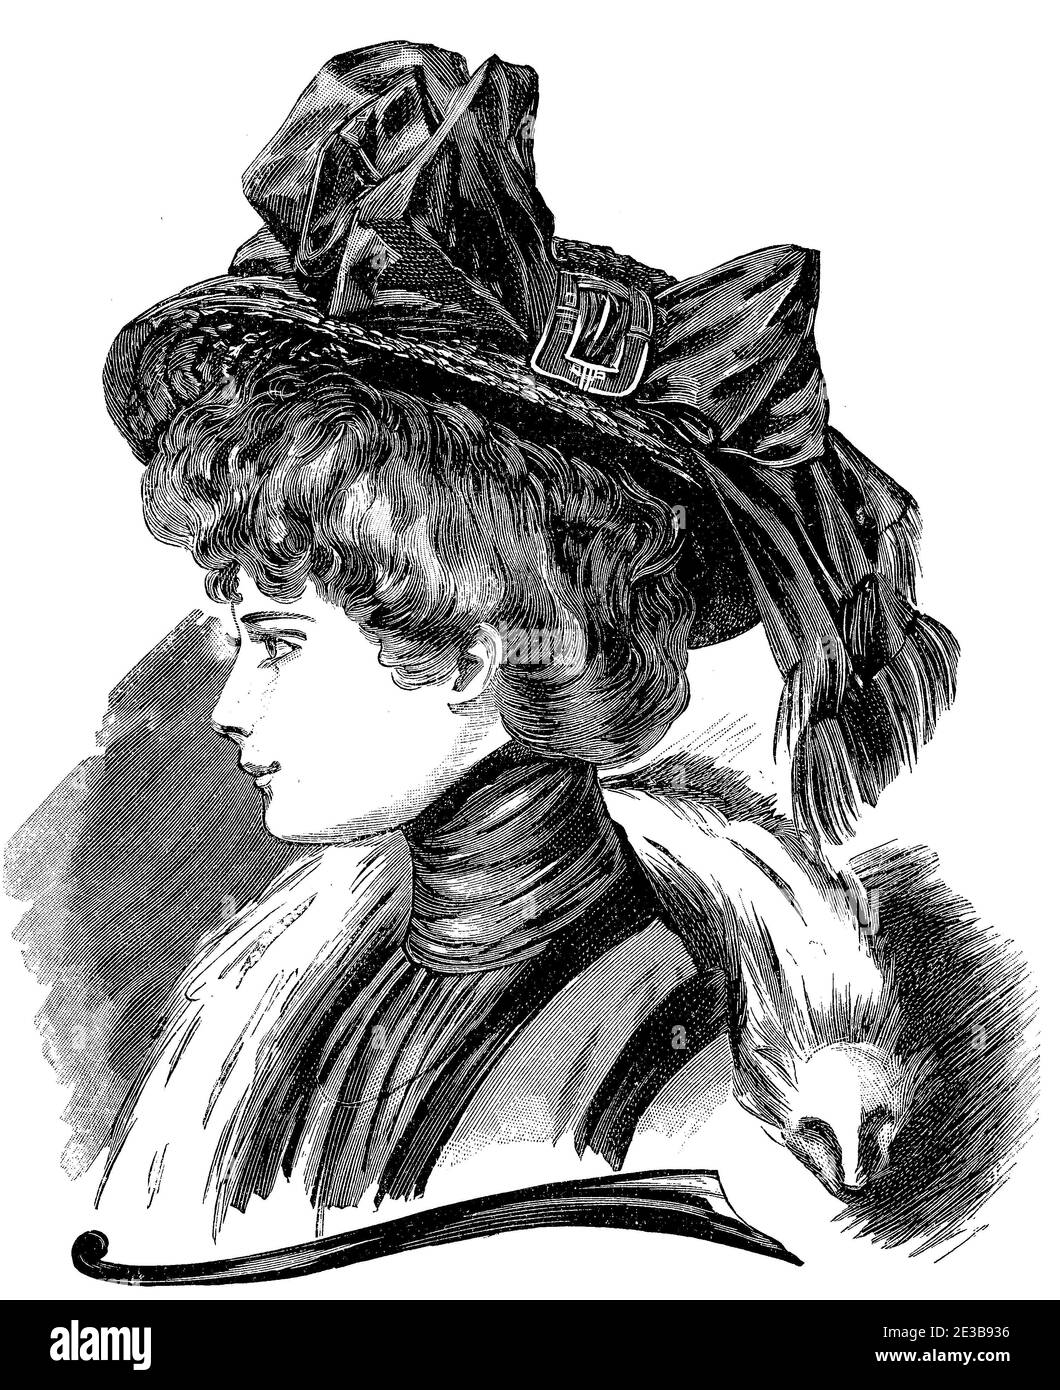 Mujeres sombrero y peluquería de moda 1907, sombreros anchos con arco, Gibson chica peinado con pelos apilados, chifón blusa y zorro blanco robó Foto de stock